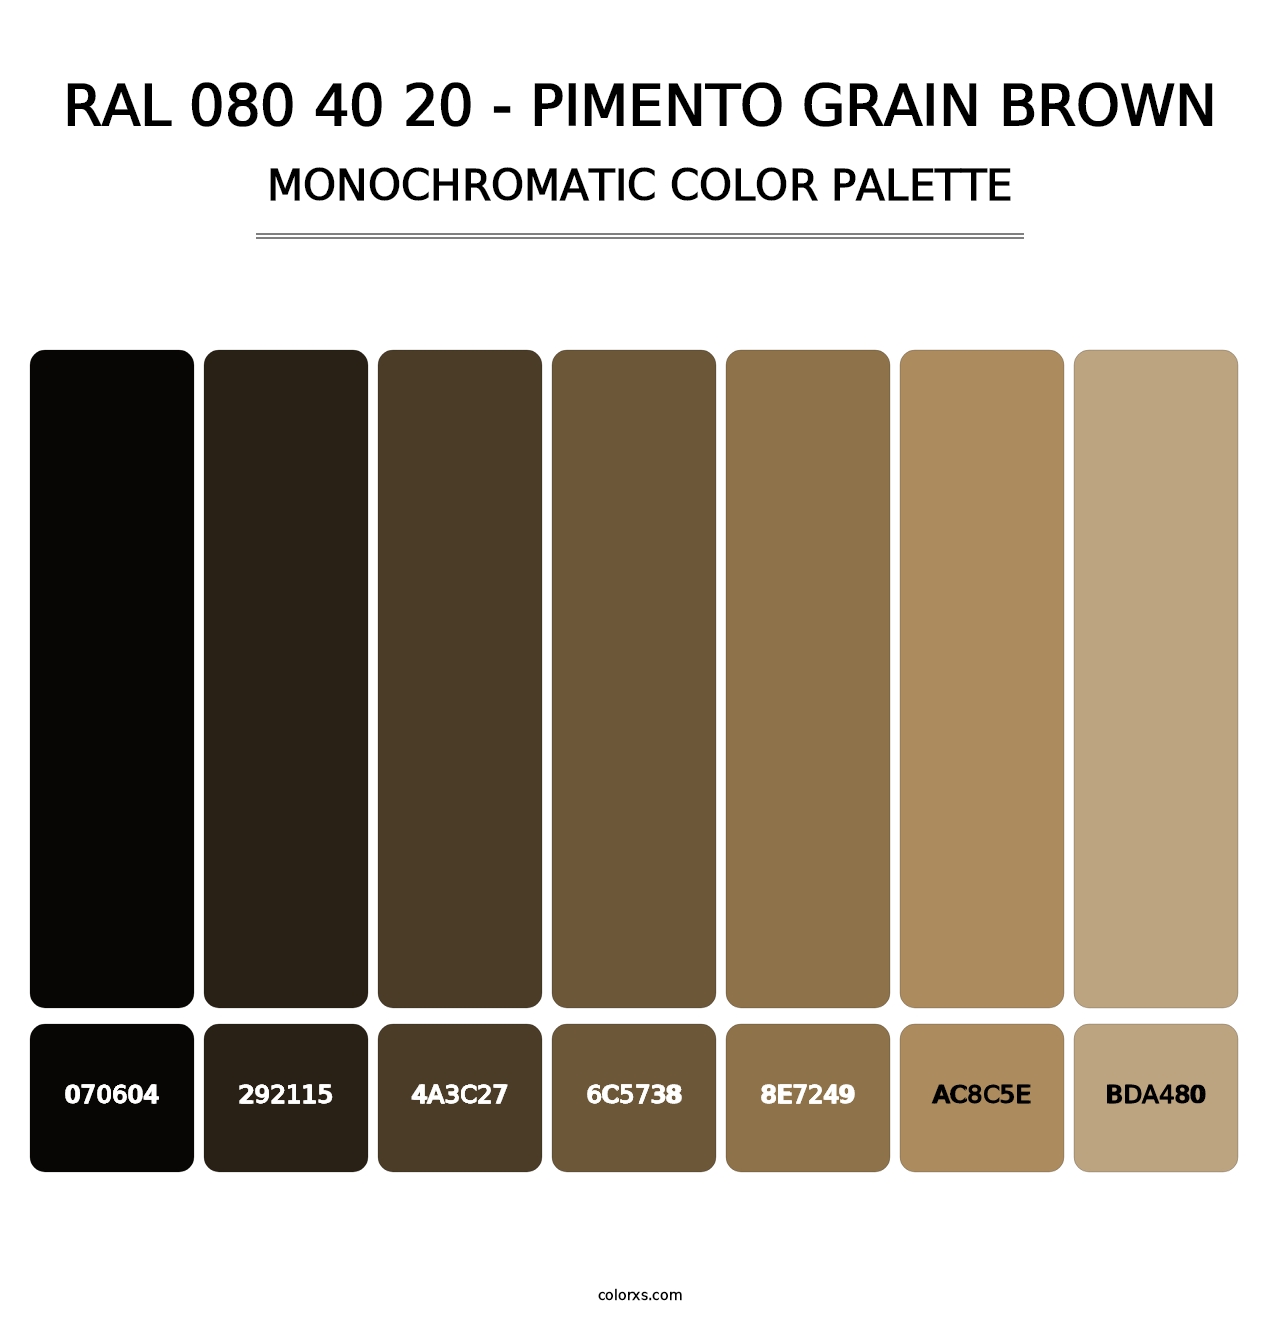 RAL 080 40 20 - Pimento Grain Brown - Monochromatic Color Palette